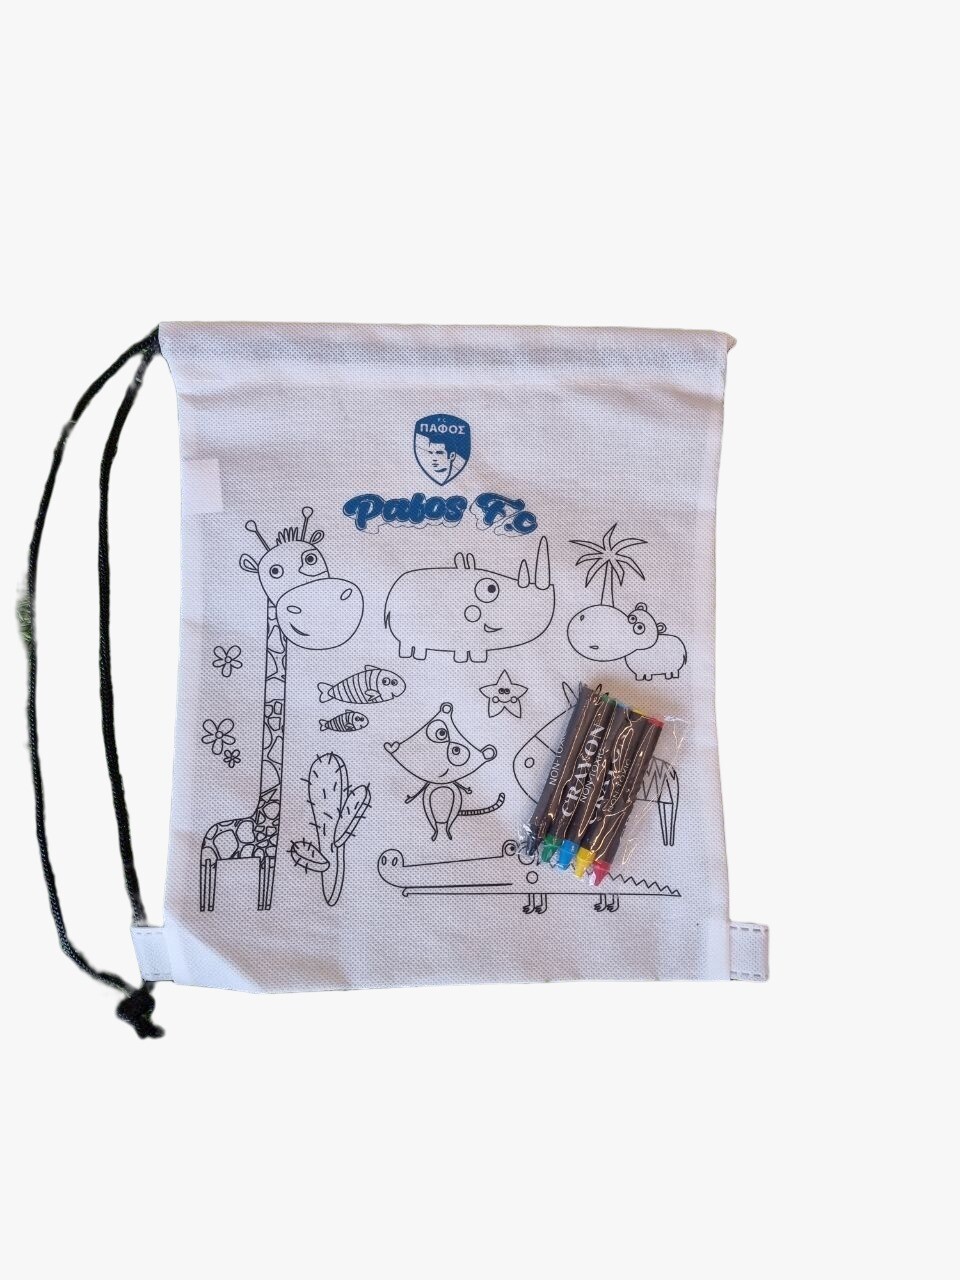 PFC Drawstring bag